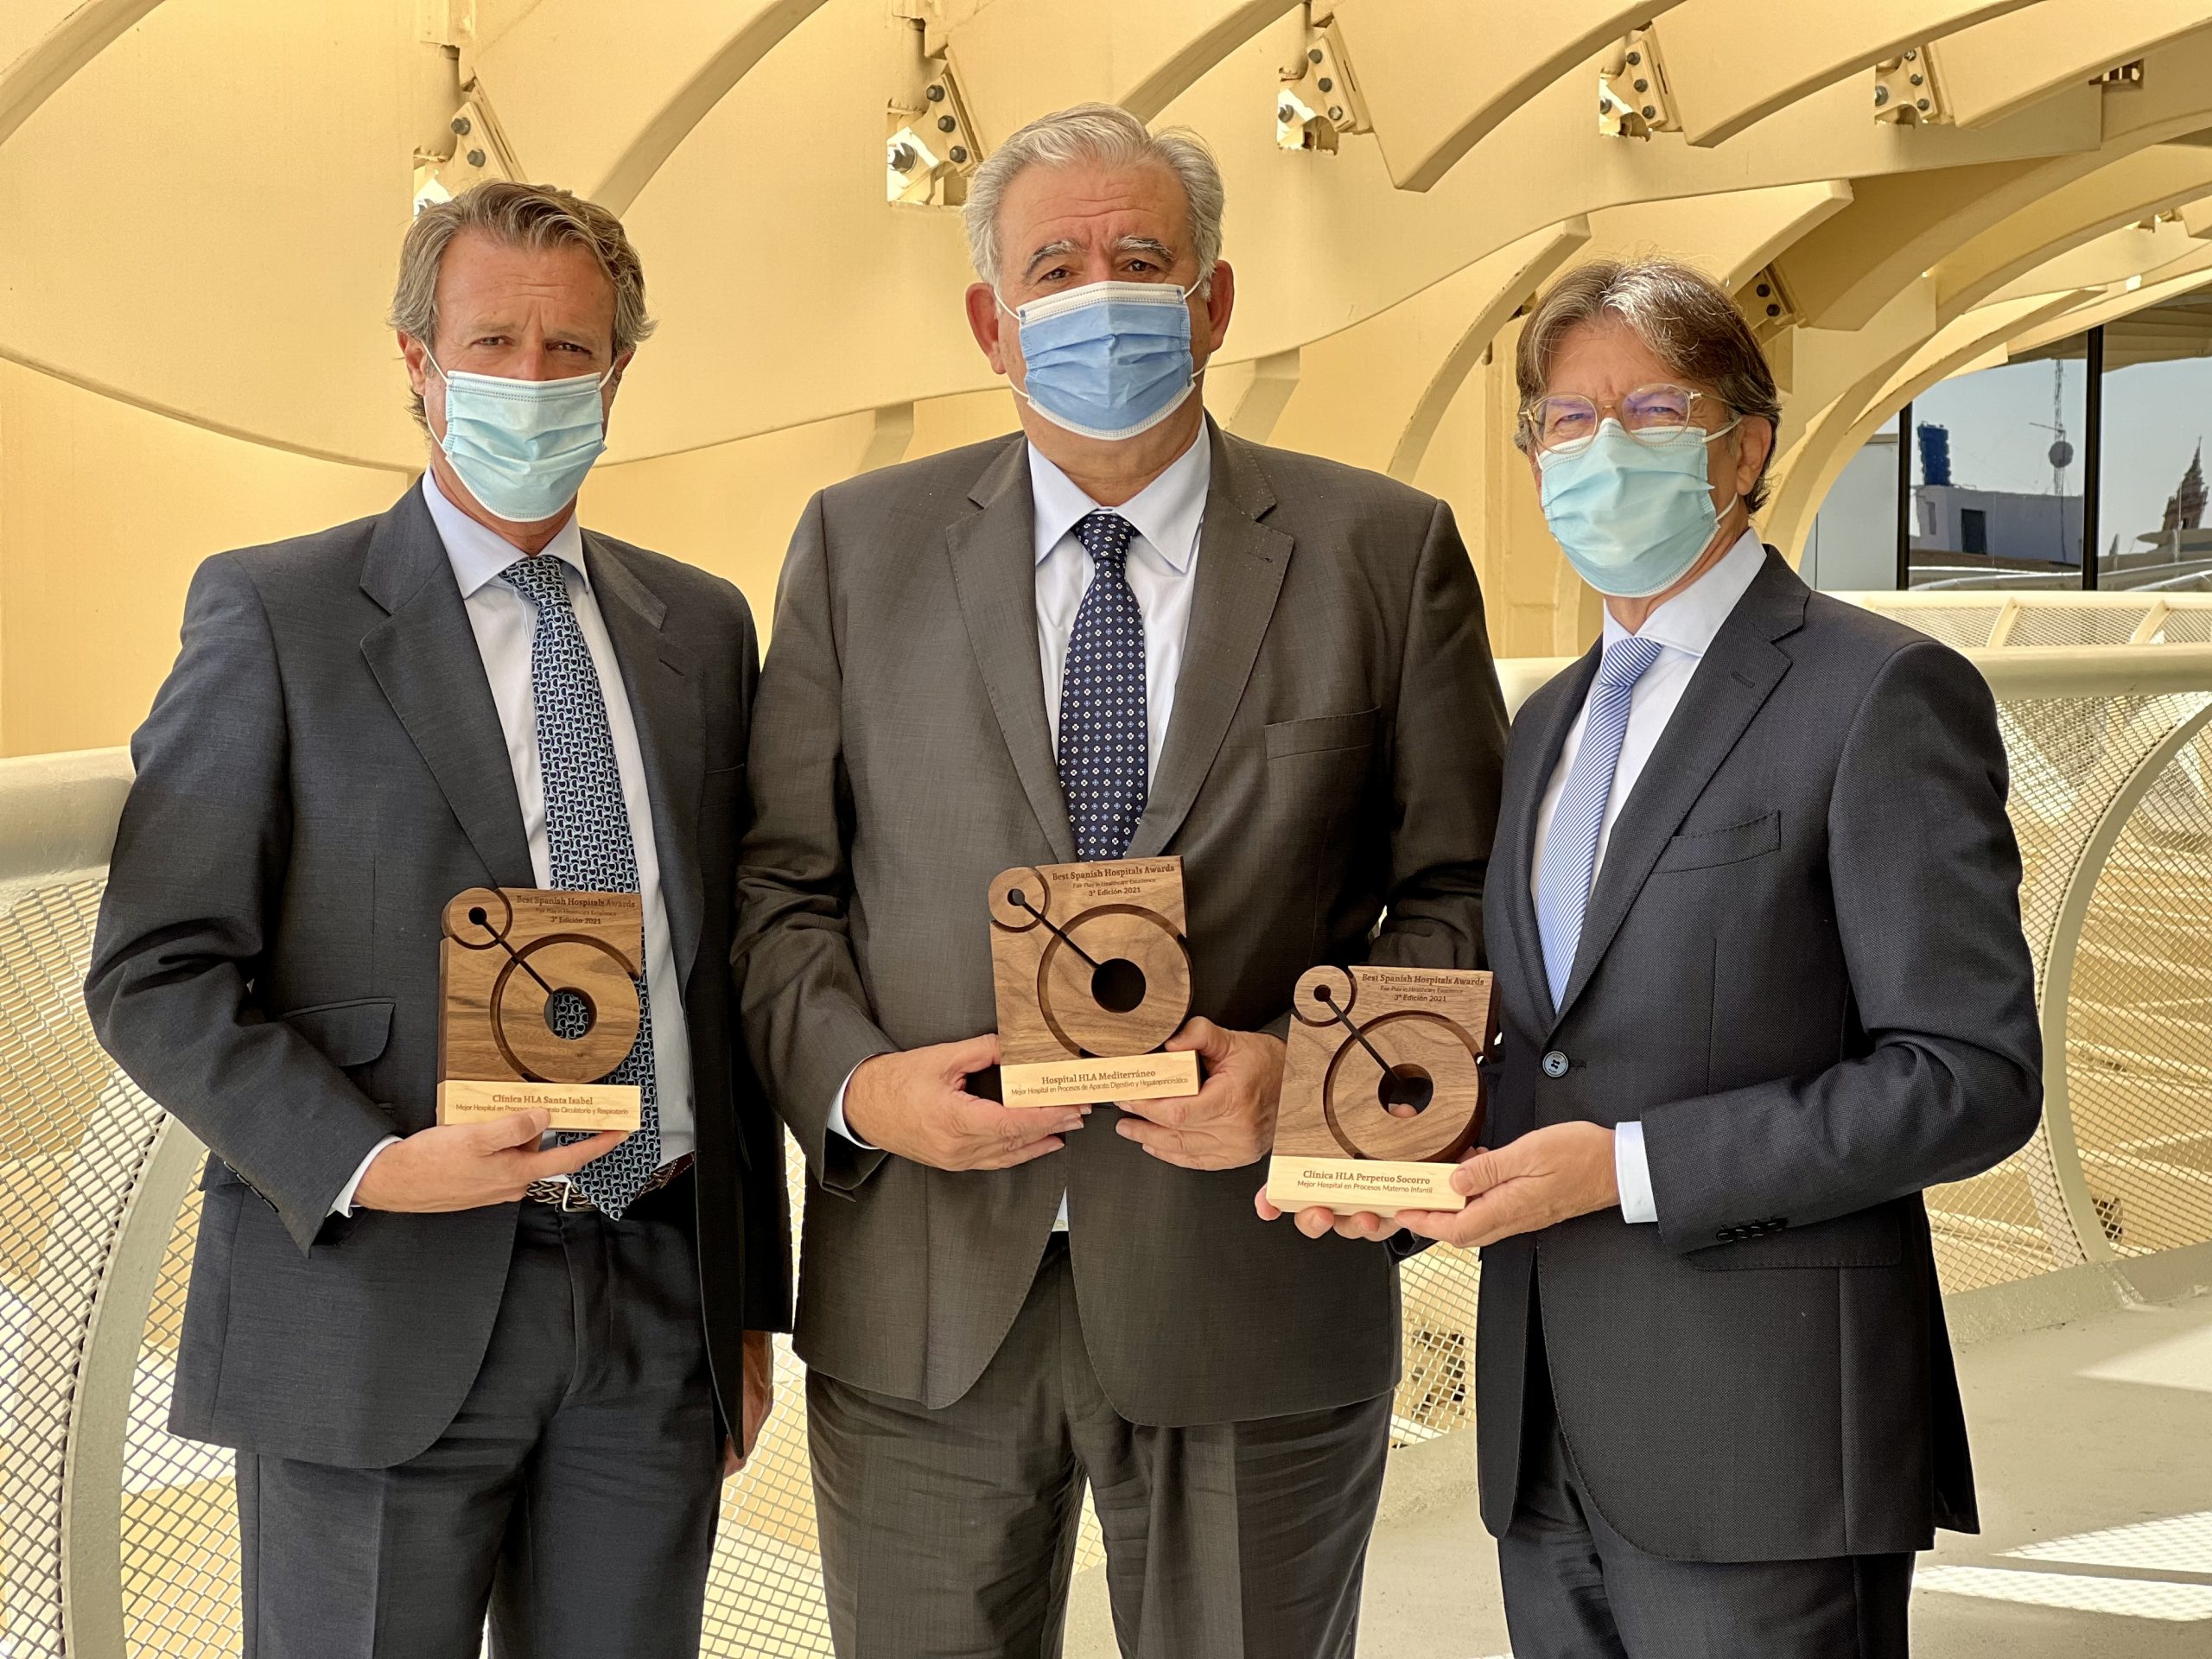 La Clínica HLA Santa Isabel, premiada en los ‘Best Spanish Hospitals Awards’